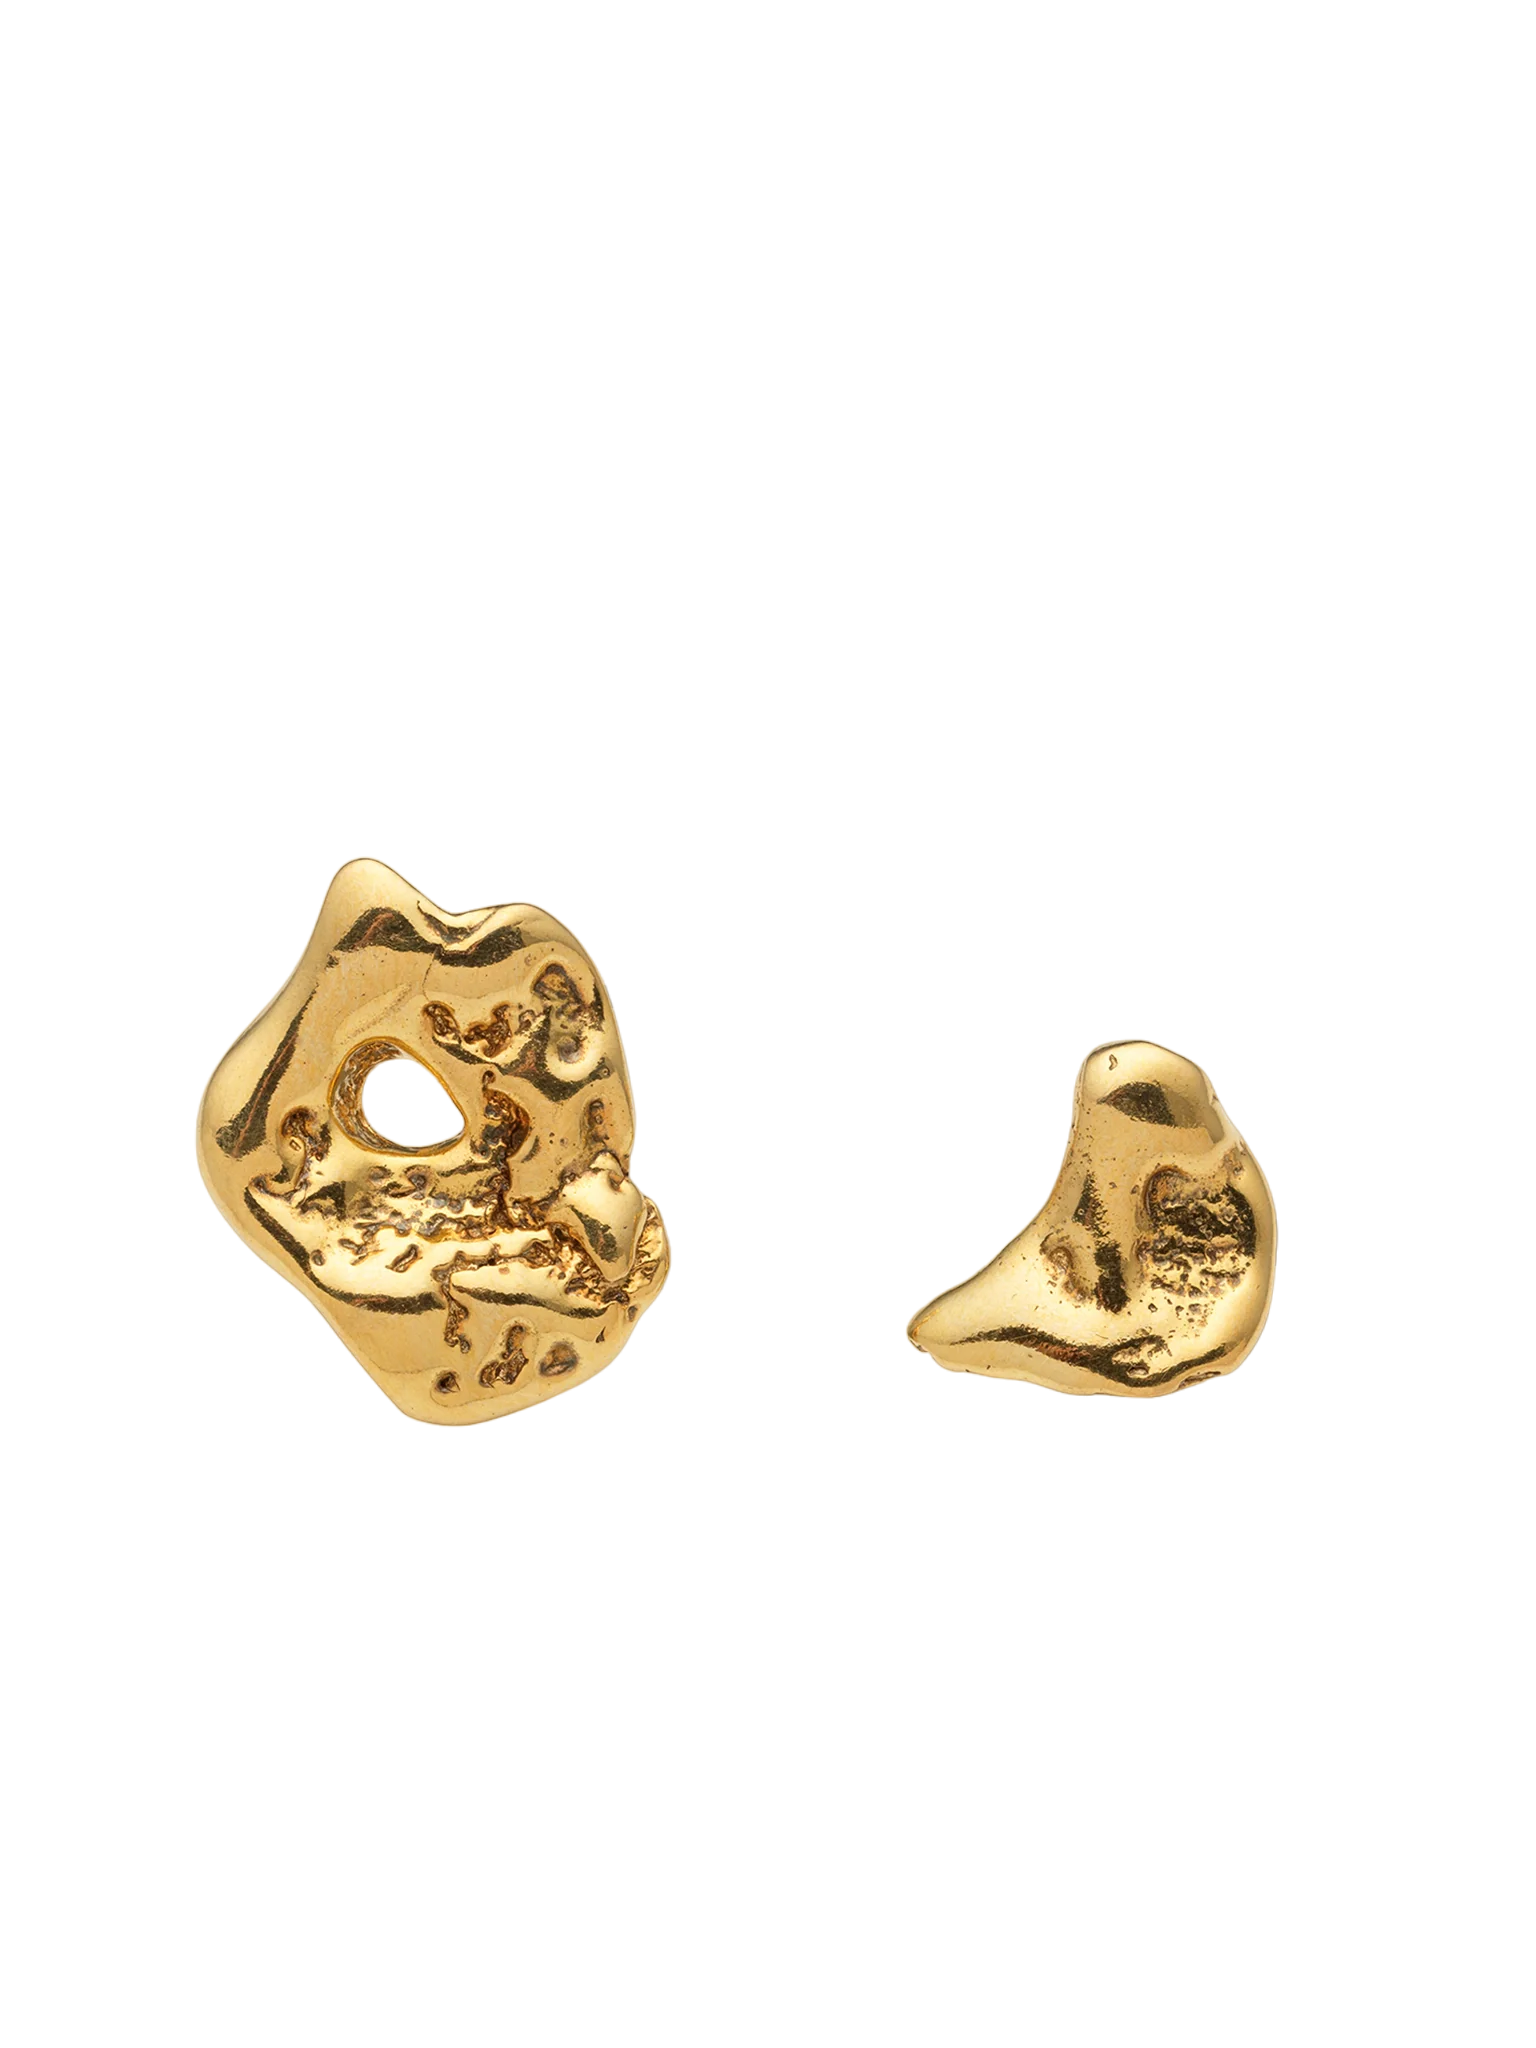 Talisman small moon earrings gold vermeil